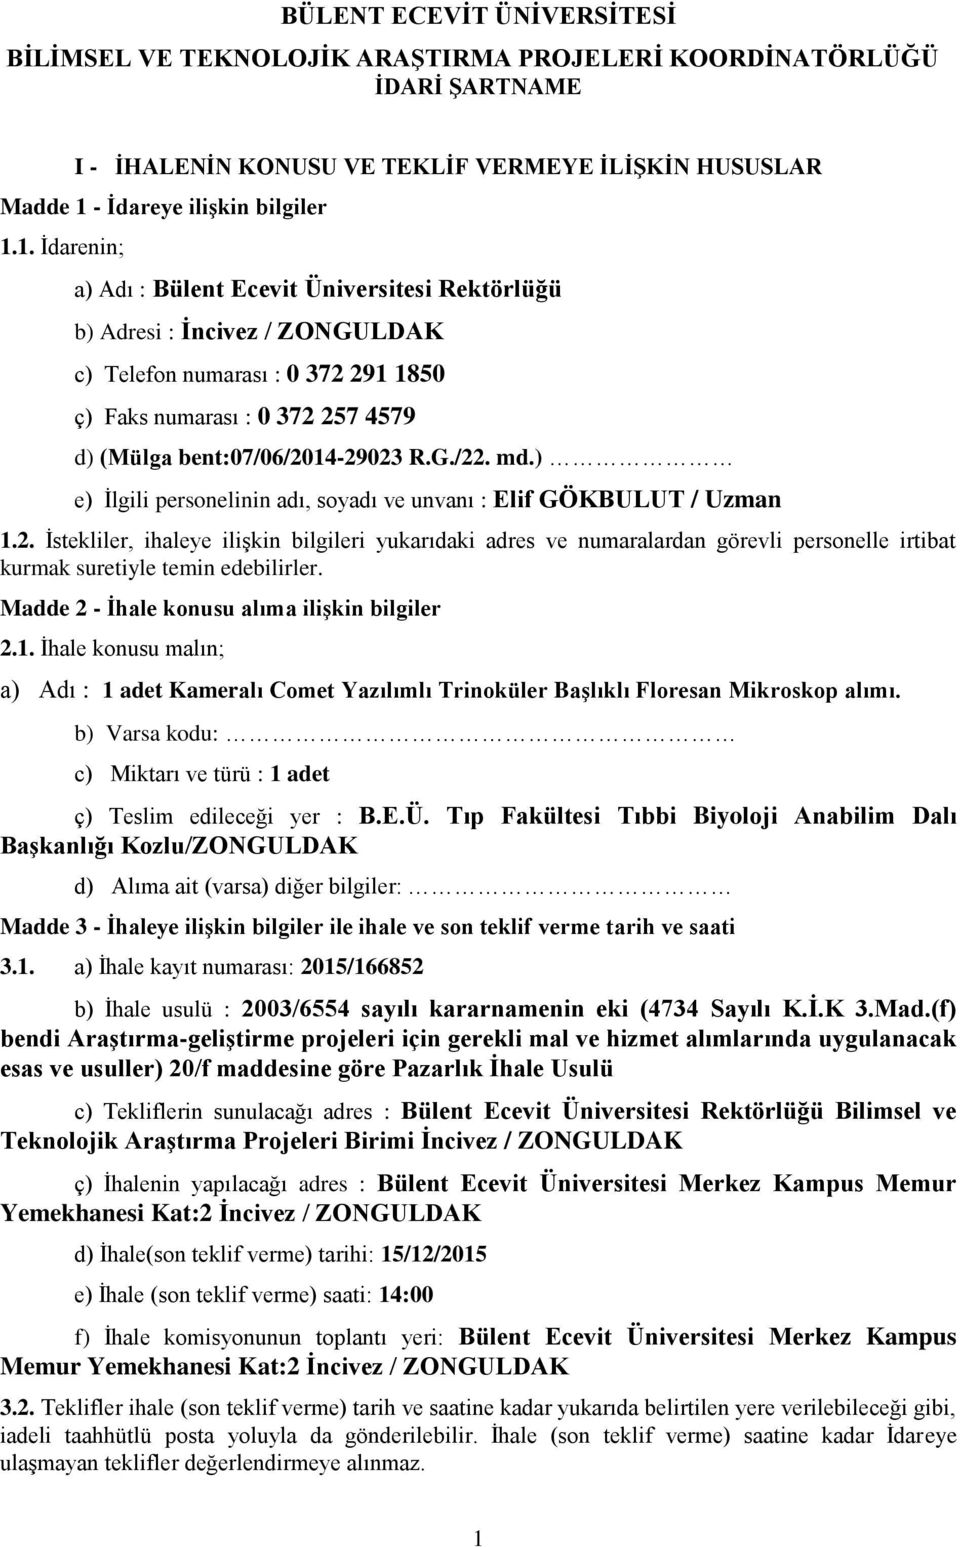 1. İdarenin; a) Adı : Bülent Ecevit Üniversitesi Rektörlüğü b) Adresi : İncivez / ZONGULDAK c) Telefon numarası : 0 372 291 1850 ç) Faks numarası : 0 372 257 4579 d) (Mülga bent:07/06/2014-29023 R.G./22.